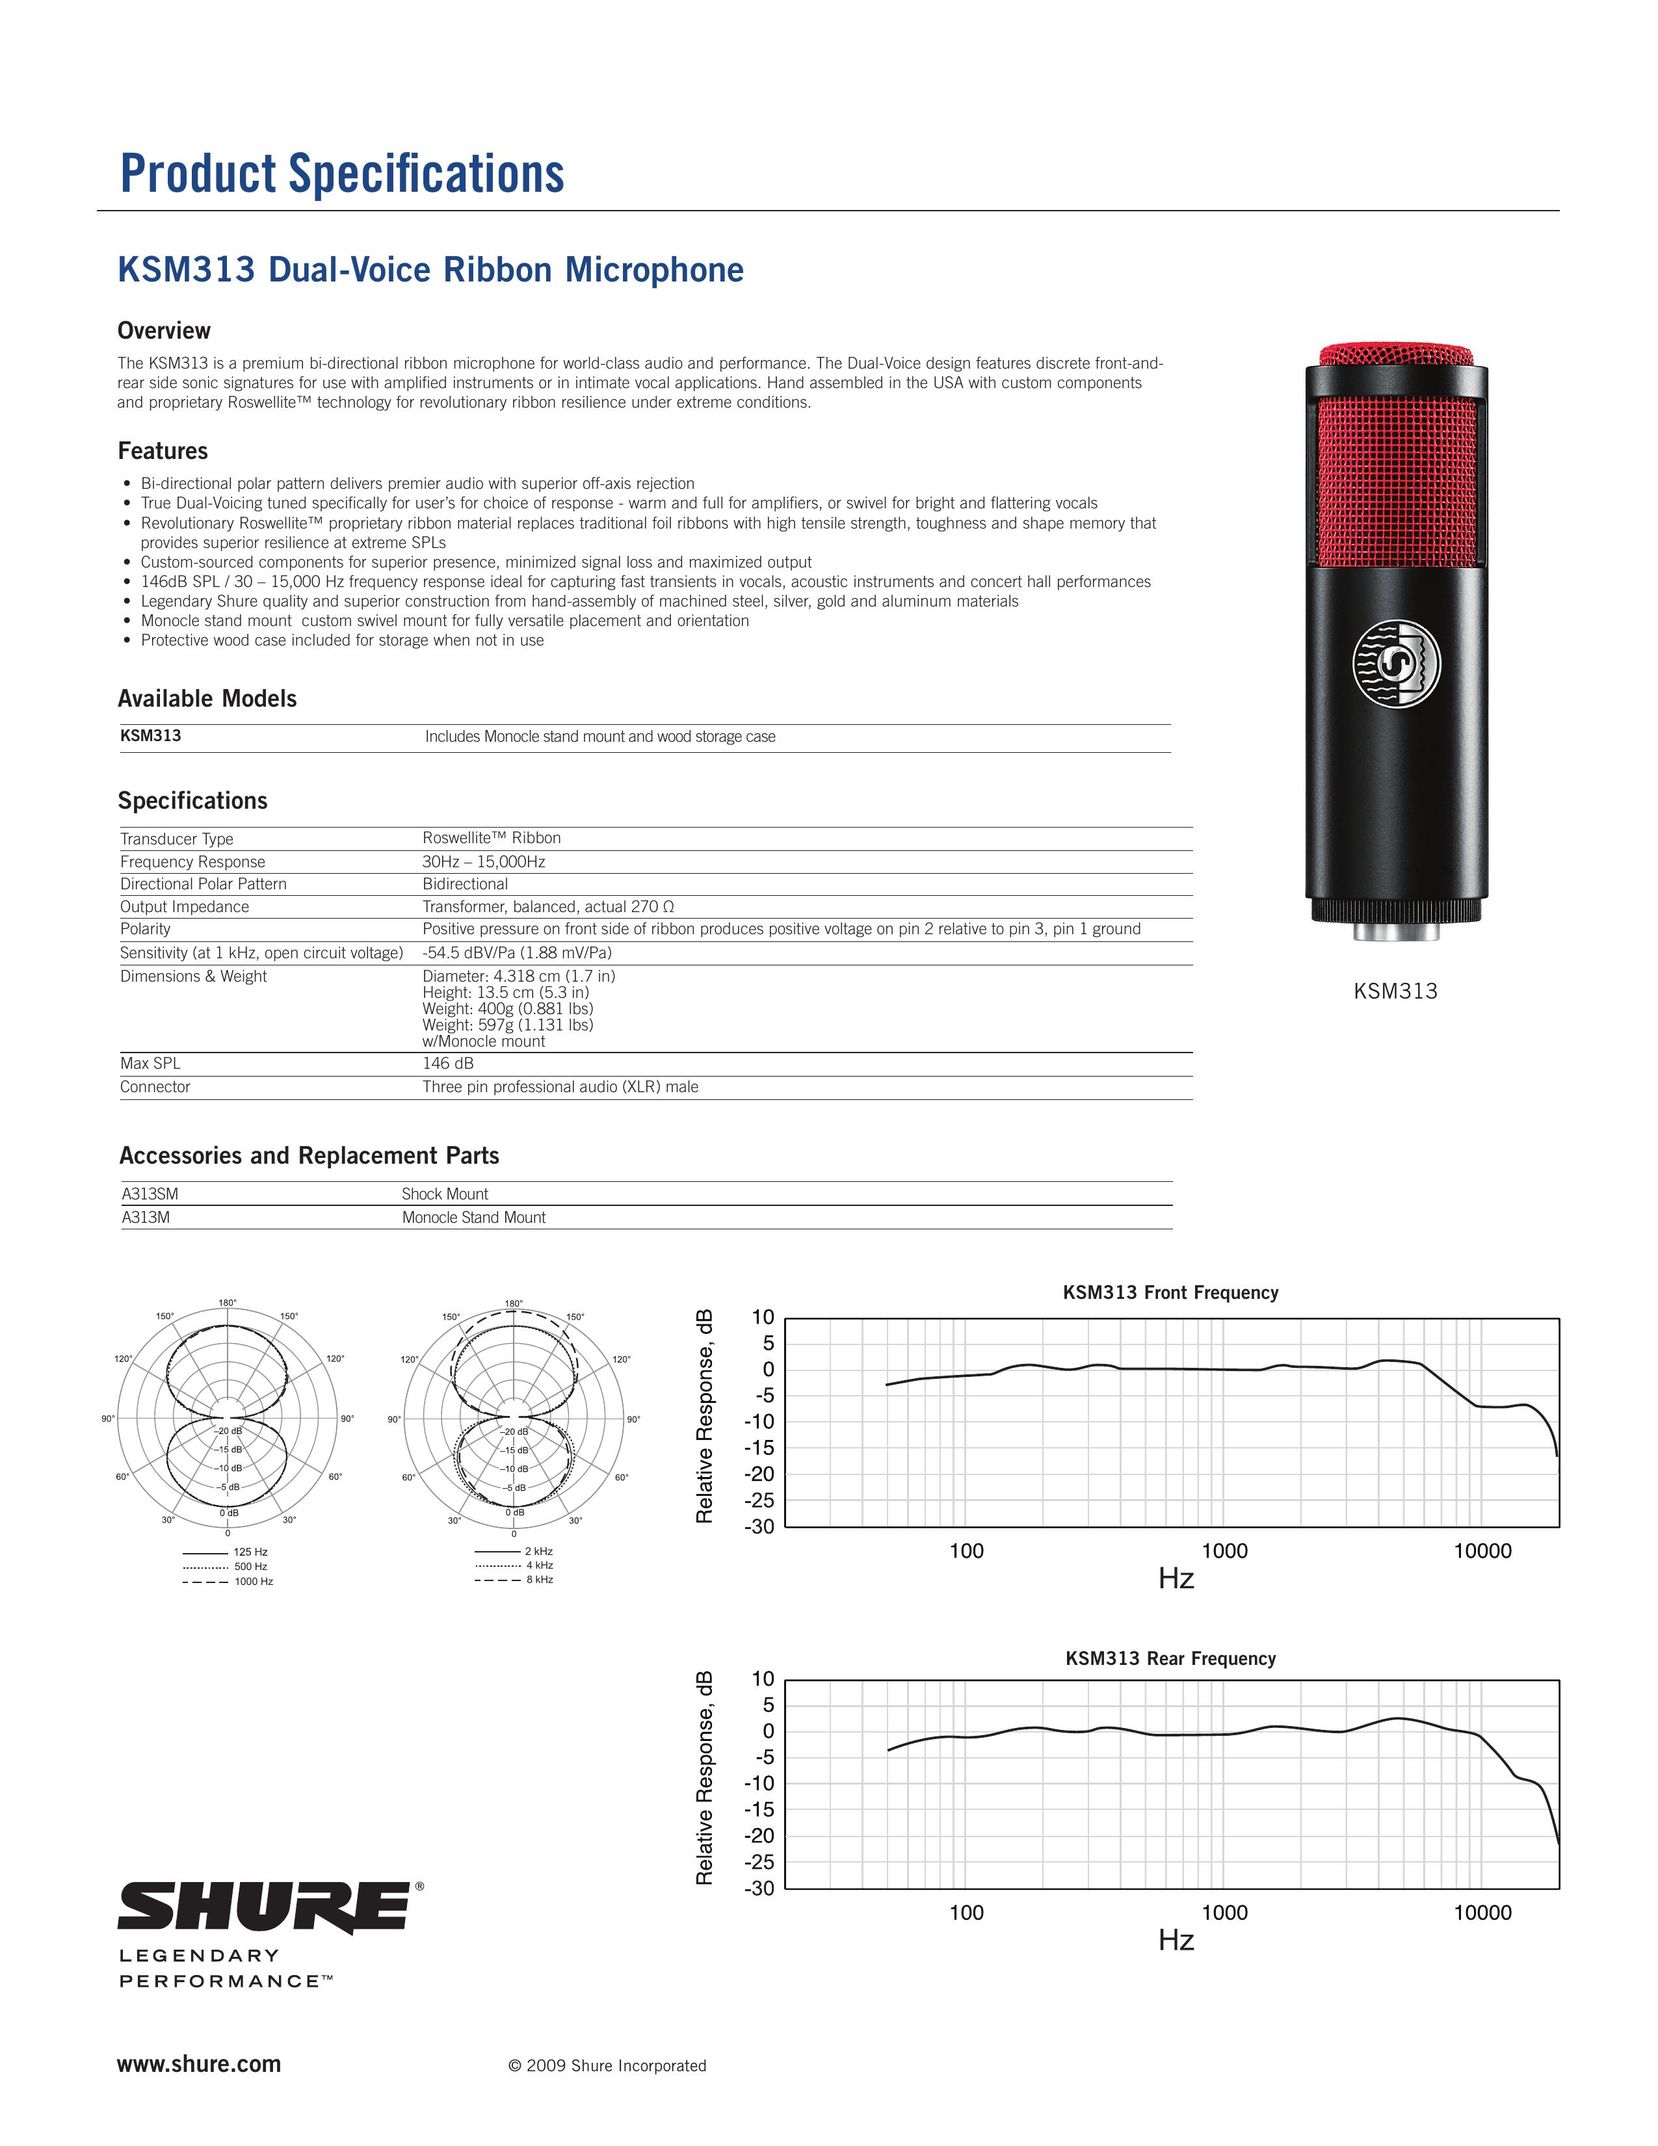 Shure ksm313 Headphones User Manual